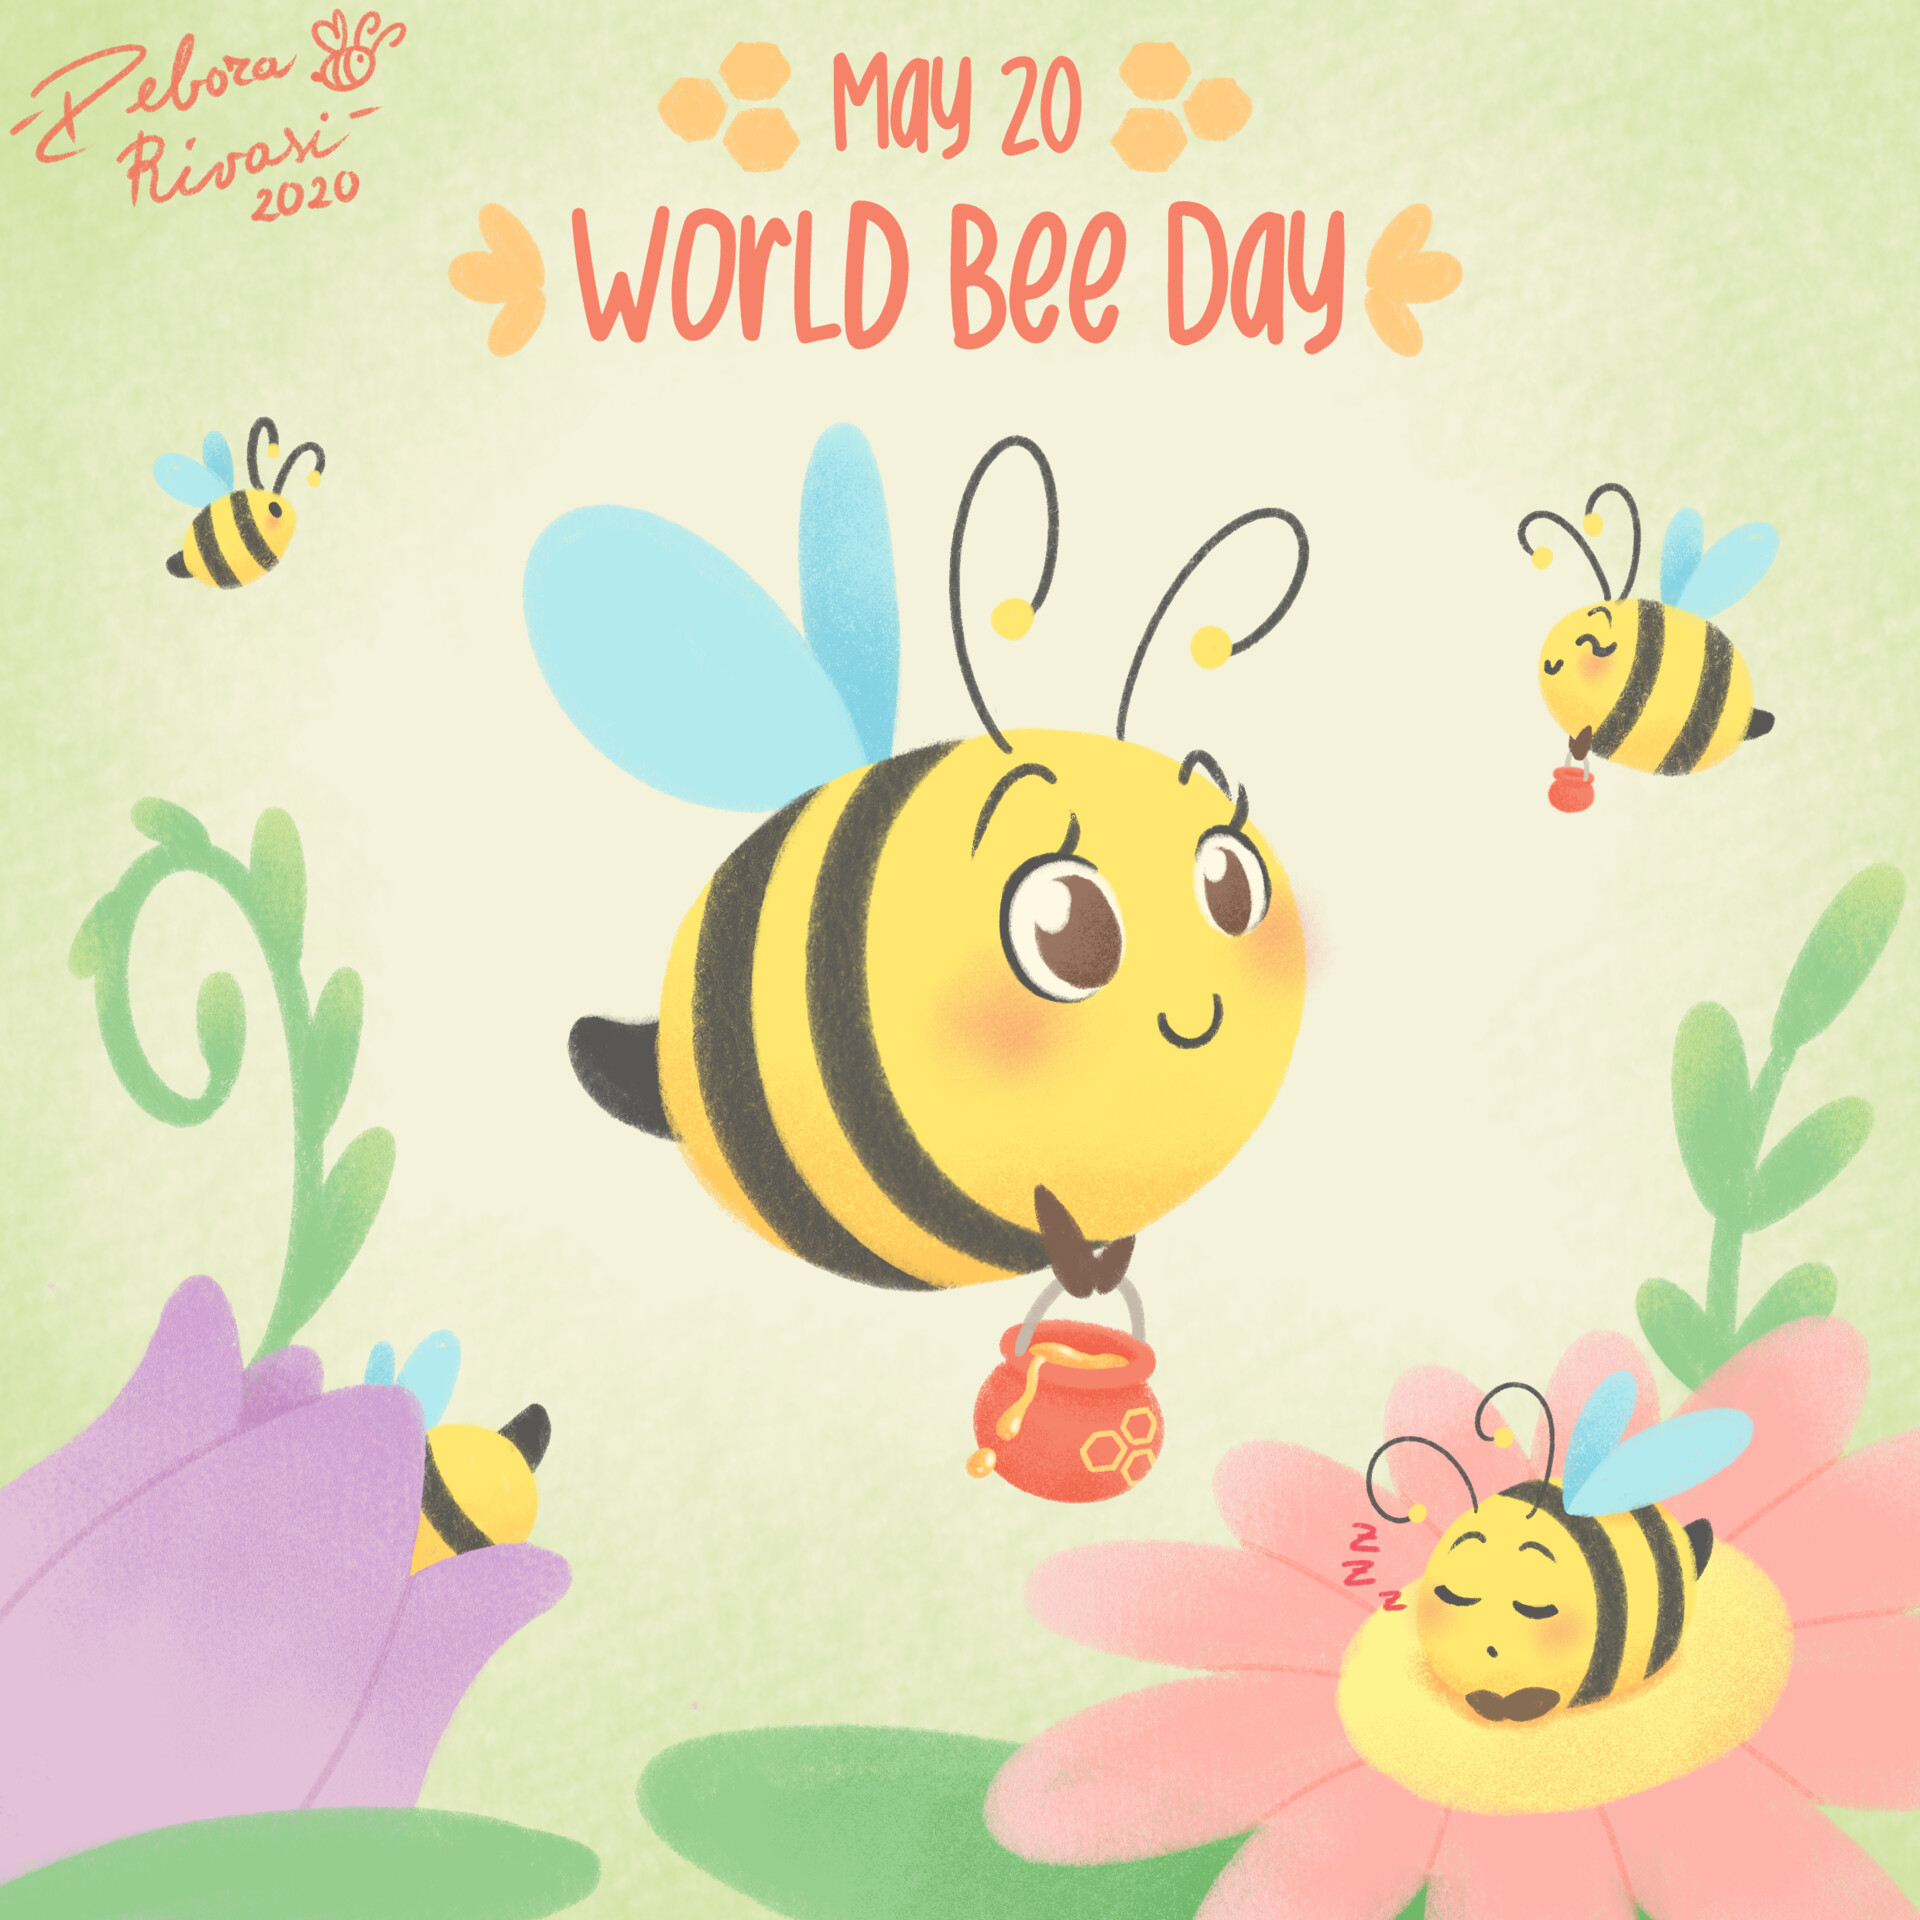 Ikona do artykułu: Bee Day, czyli Dzień Pszczoły w zerówkach